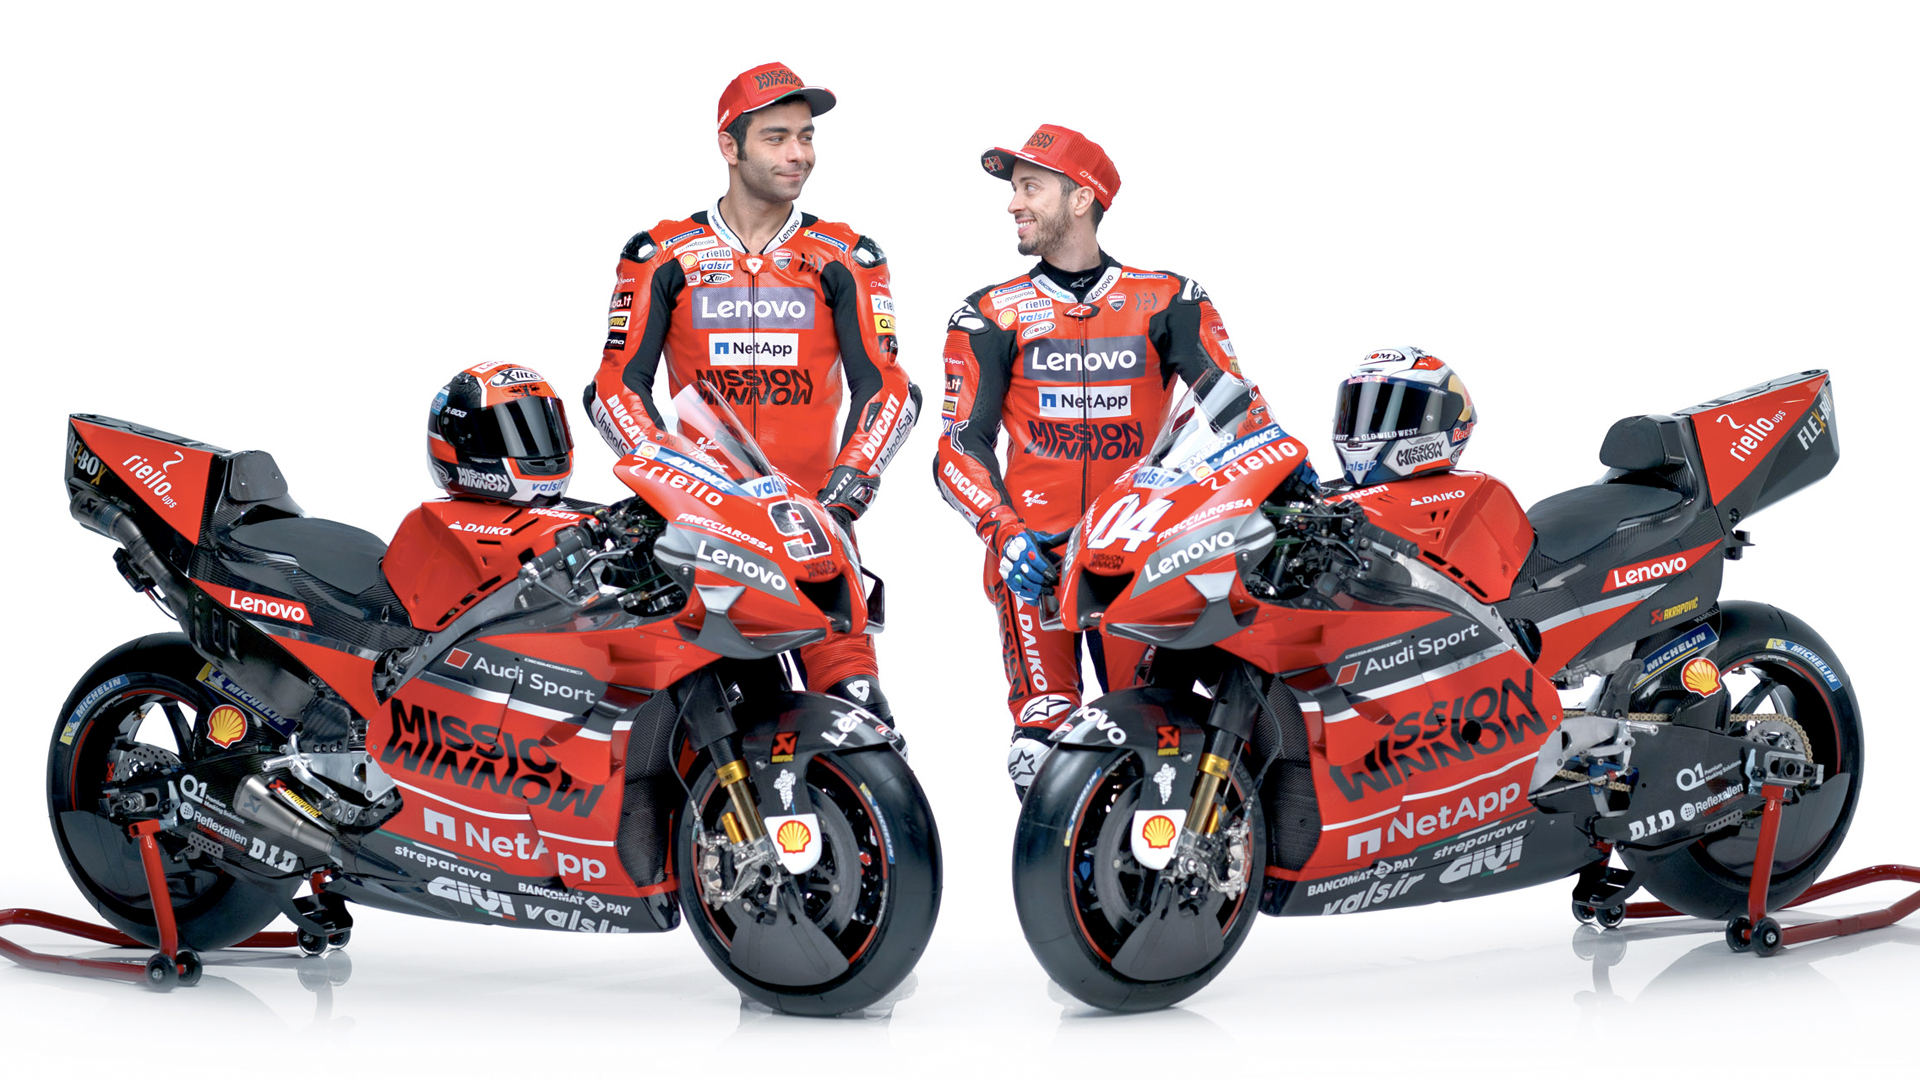 The 2020 Mission Winnow Ducati Team presented in Bologna